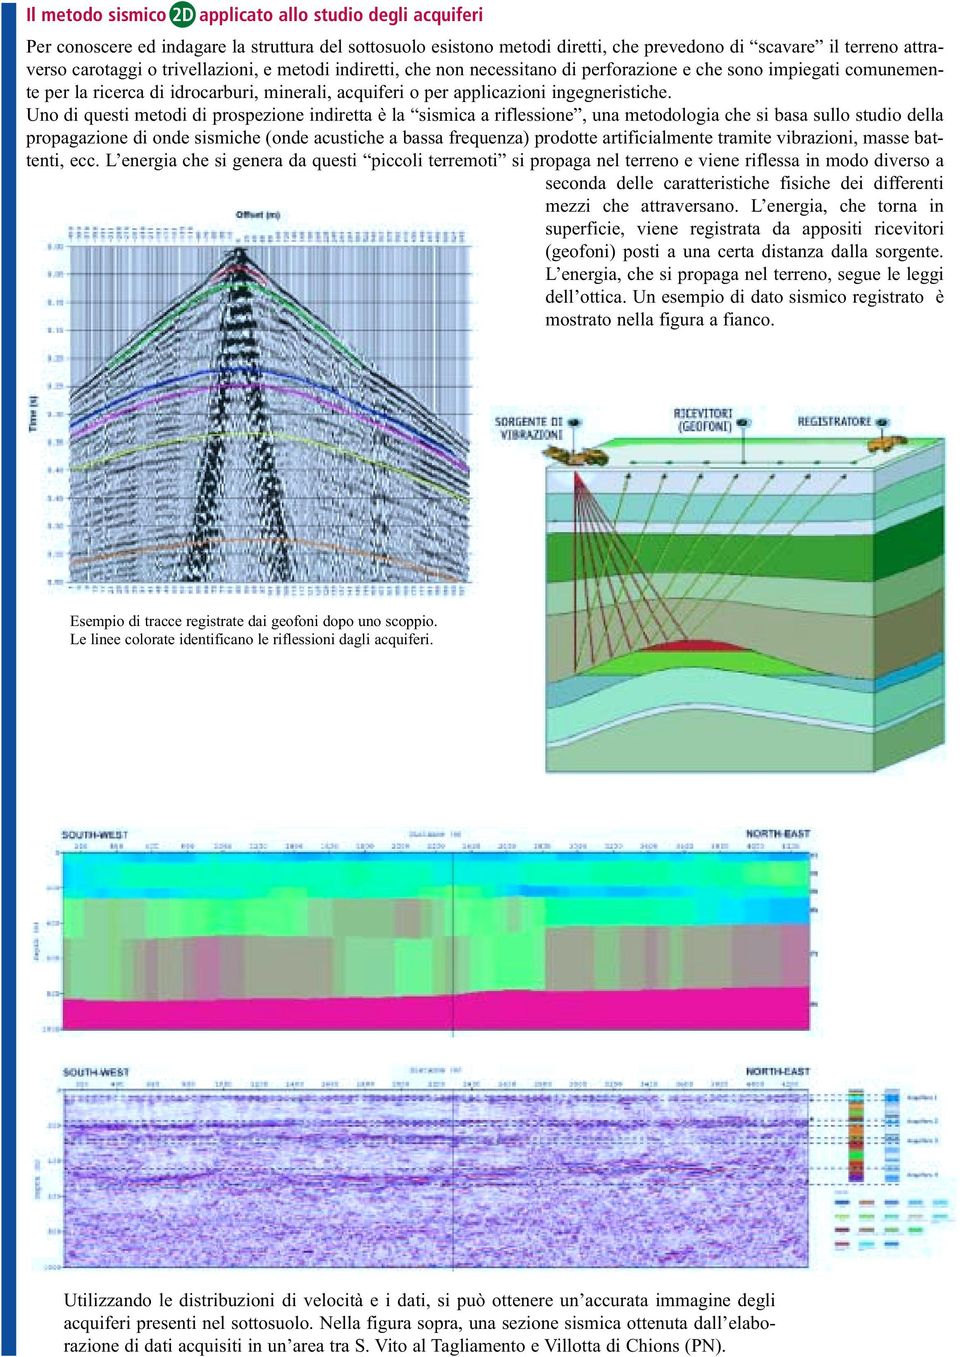 Uno di questi metodi di prospezione indiretta è la sismica a riflessione, una metodologia che si basa sullo studio della propagazione di onde sismiche (onde acustiche a bassa frequenza) prodotte